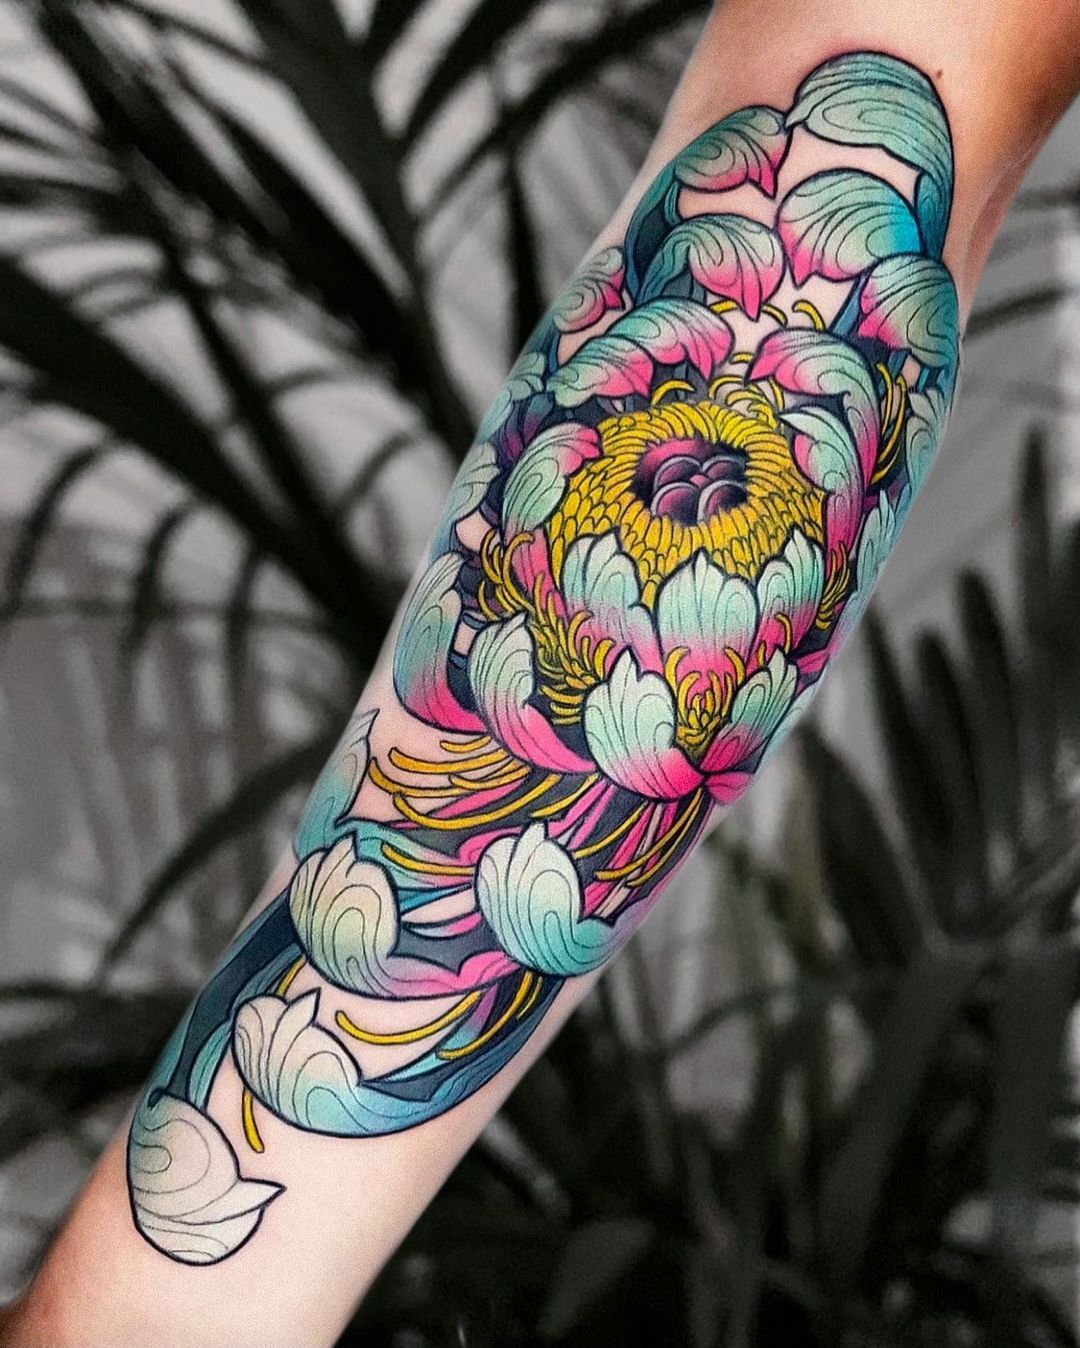 Matching chrysanthemum tattoos.